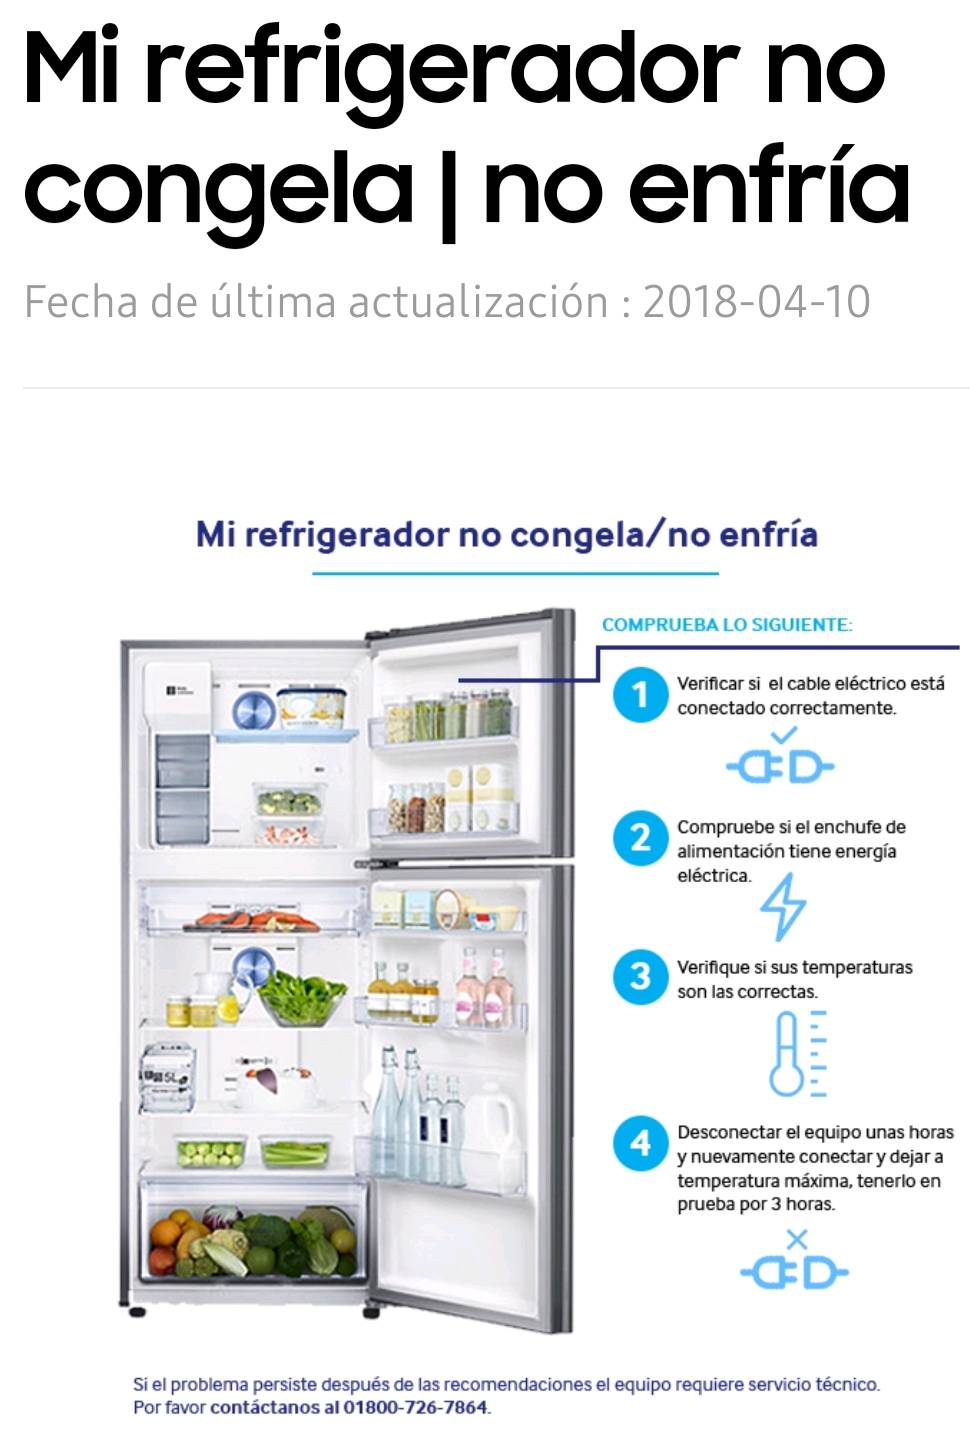 Refrigerador no congela arriba y no enfría abajo - Samsung Members